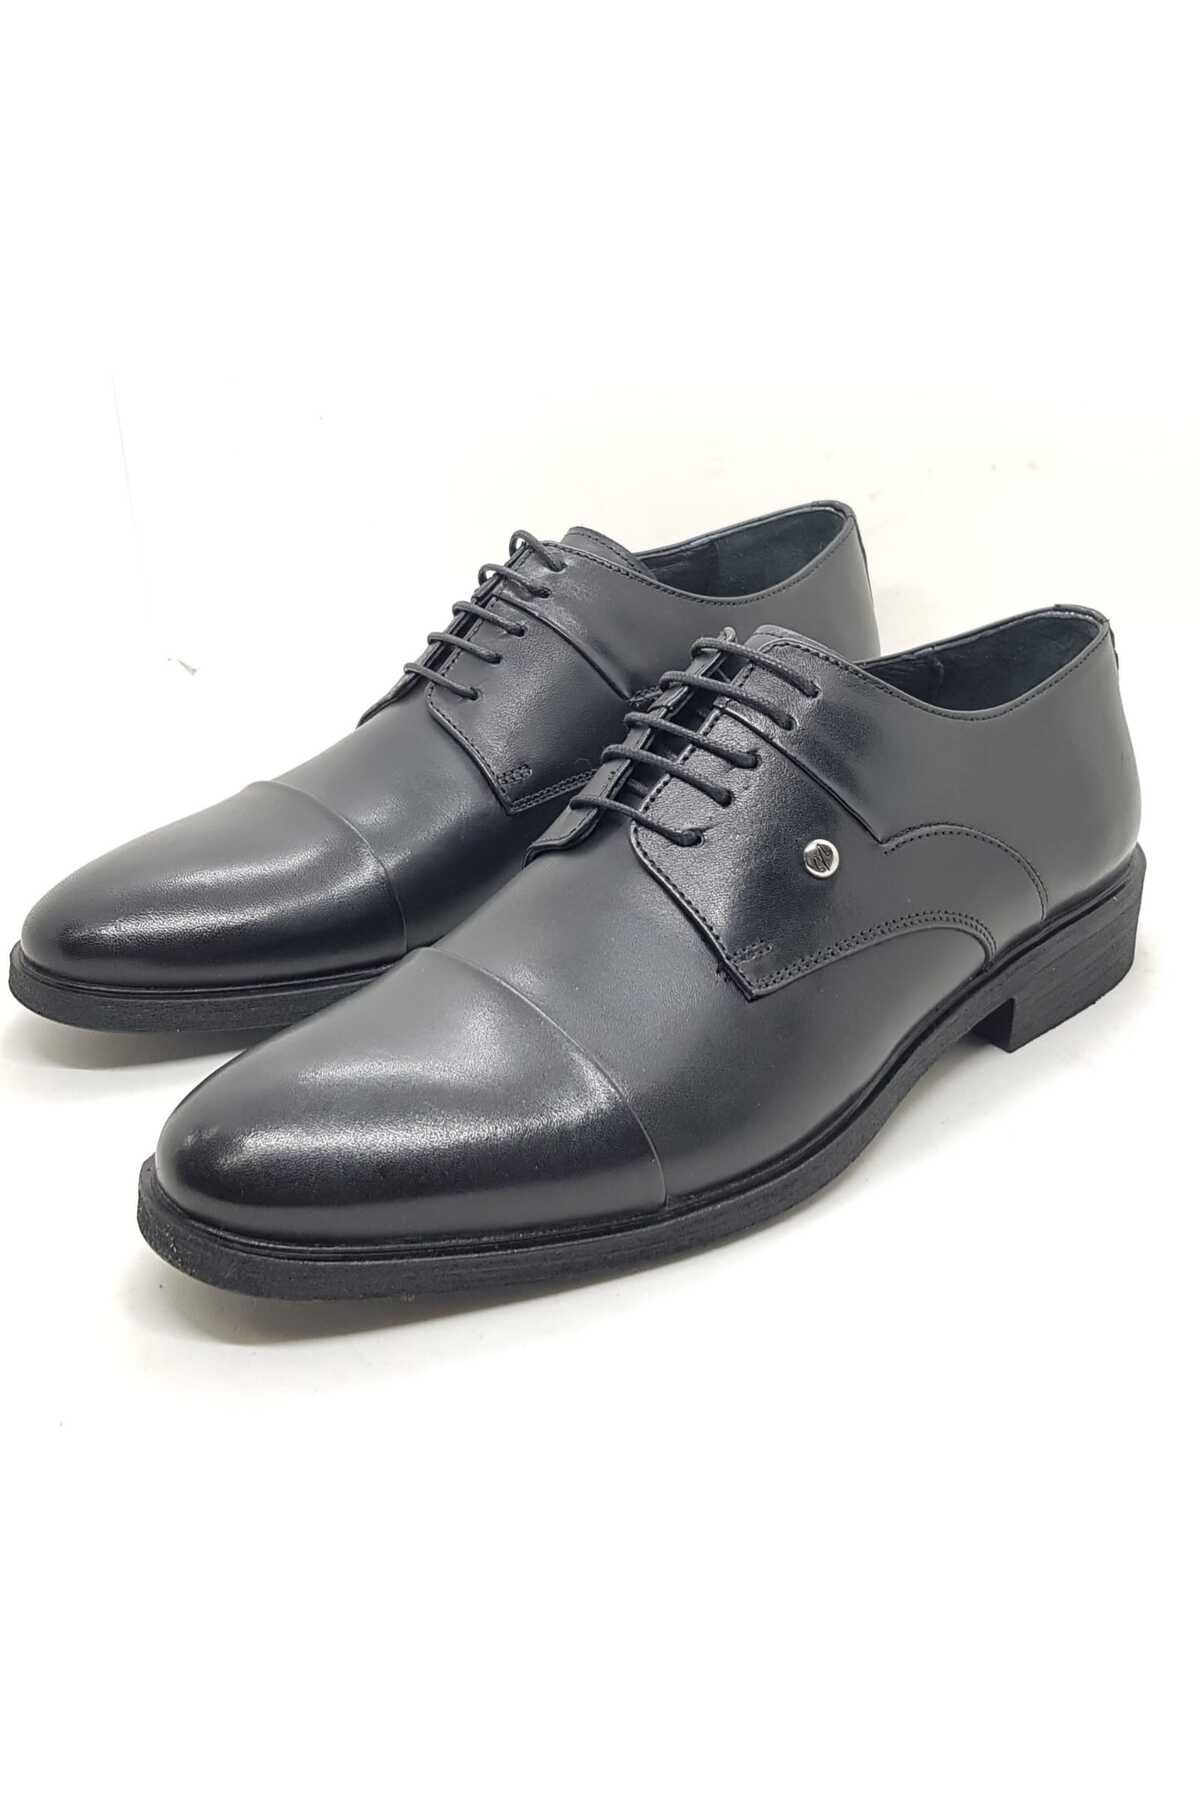 Neco siyah kauçuk taban klasik ayakkabı bağcıklı model